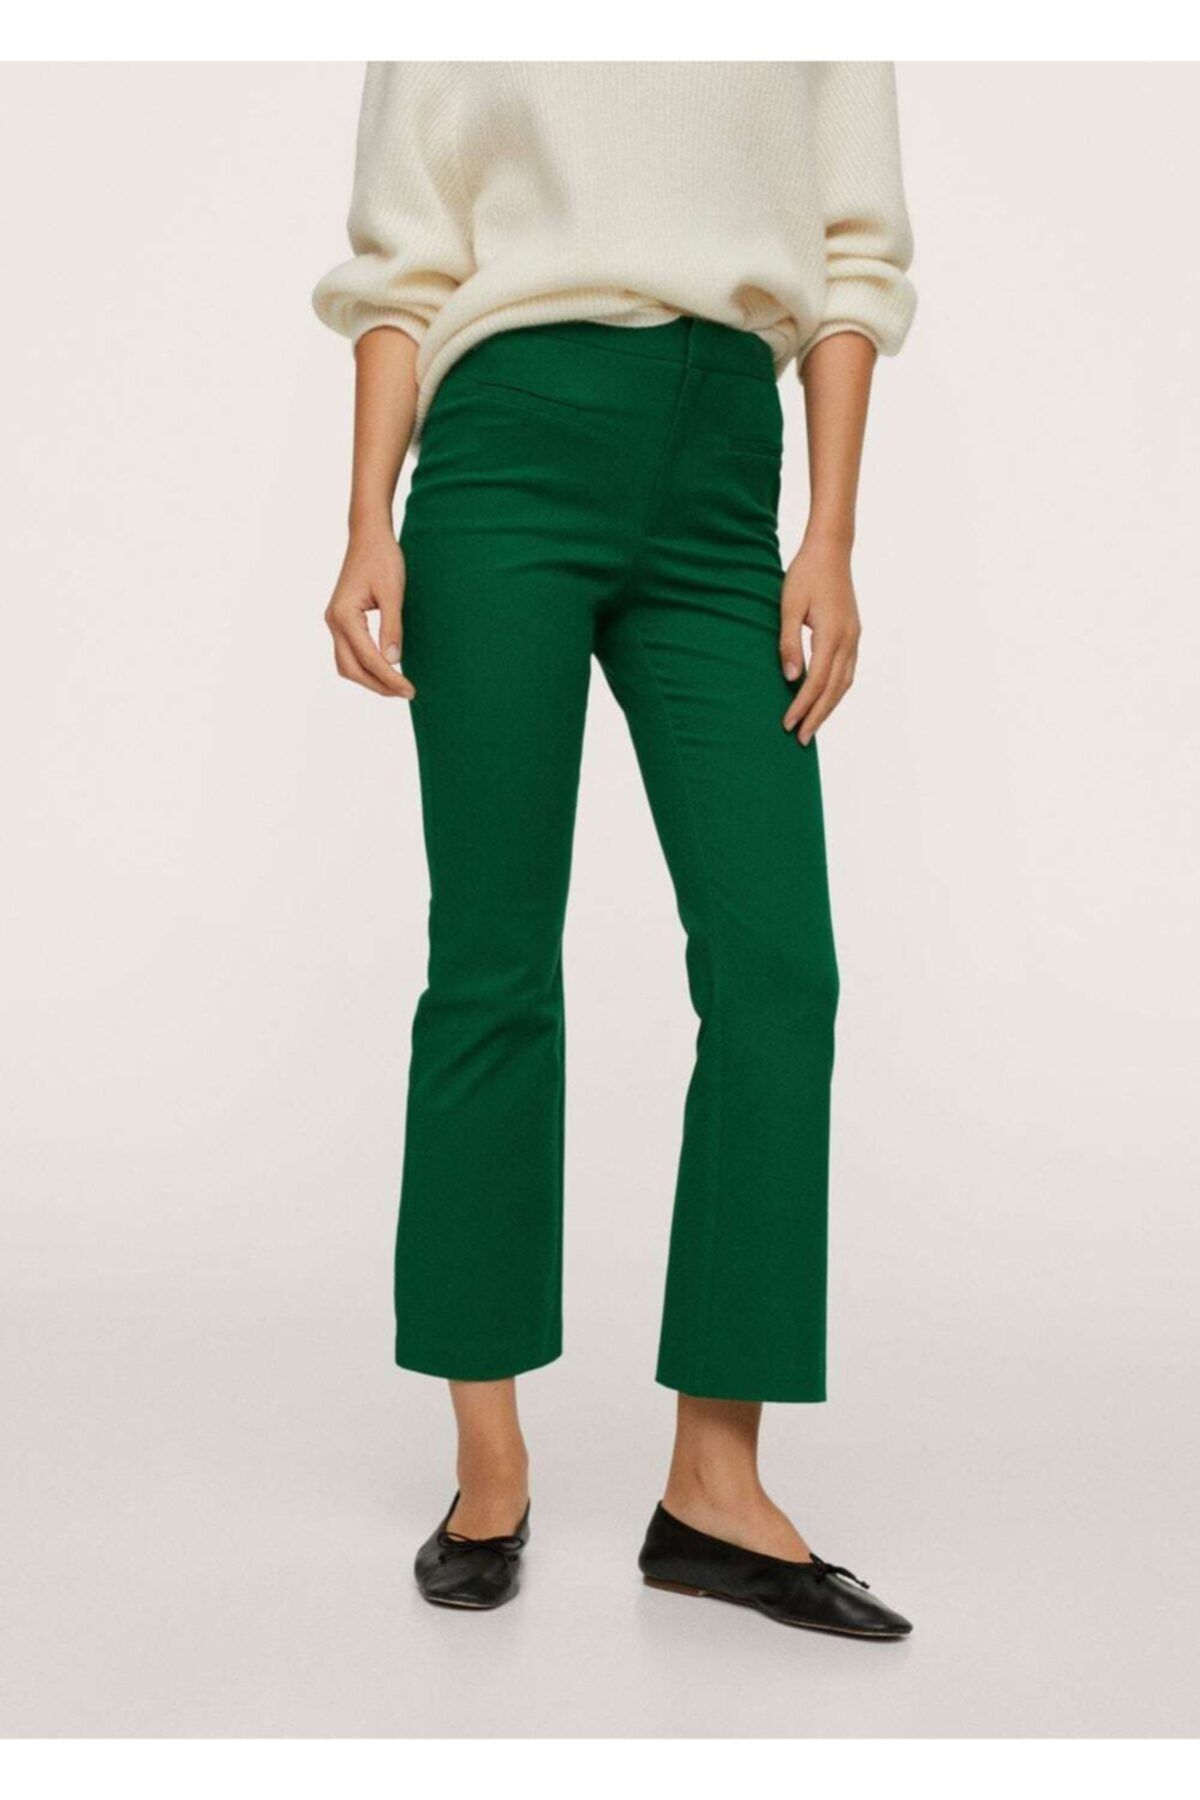 MANGO Kadın Yeşil Kısa Ispanyol Paçalı Pantolon